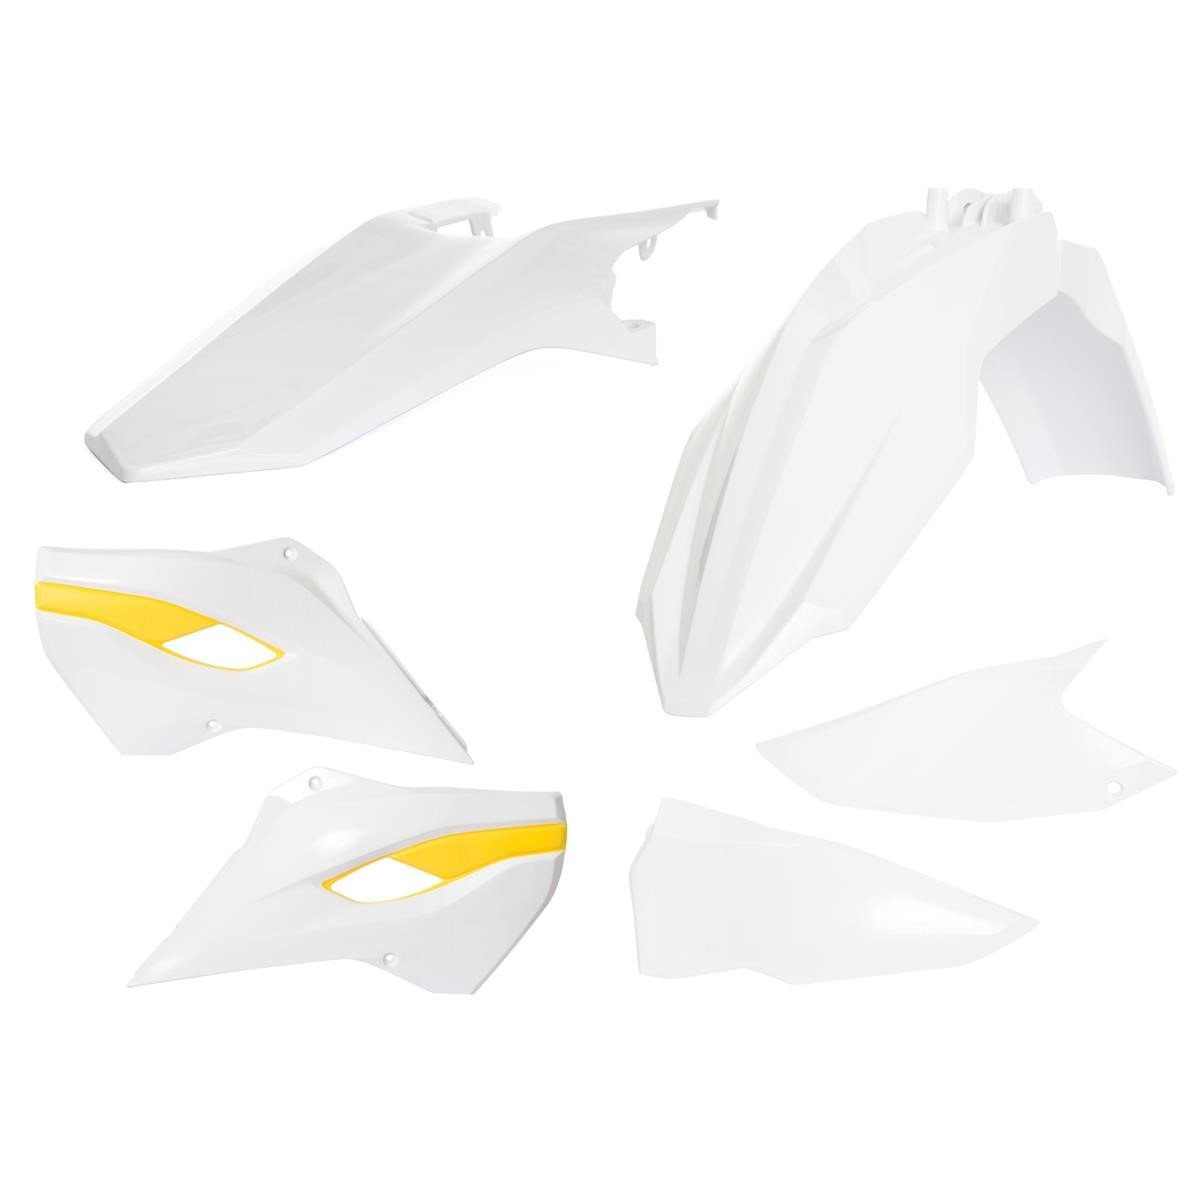 Acerbis Plastik-Kit  Husqvarna TE/FE 2015, Replica, Weiß